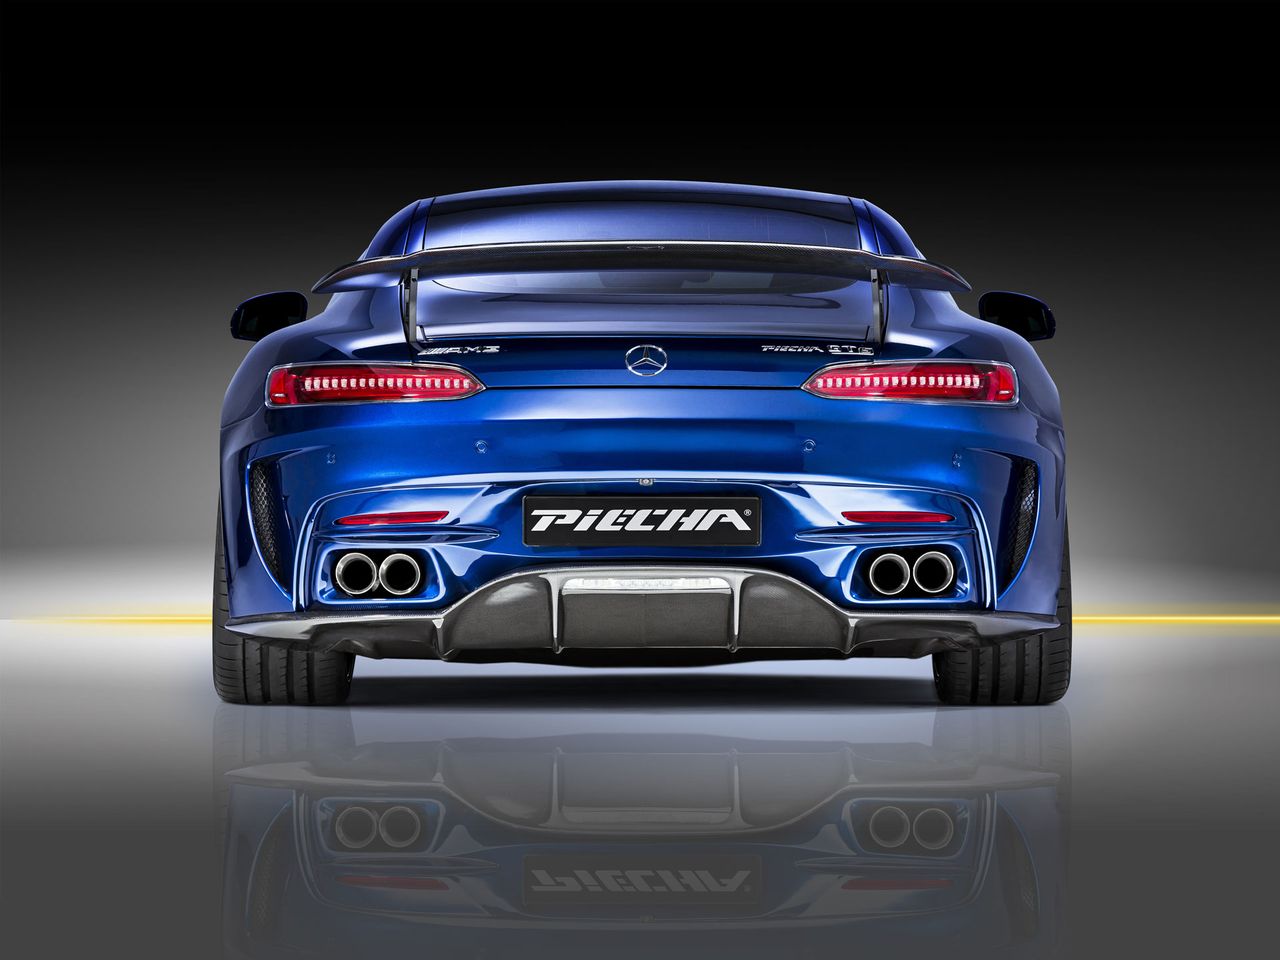 W tym przypadku skupiono się na aerodynamice Mercedesa-AMG GT R, która jest kompromisem pomiędzy wydajnością a estetyką.